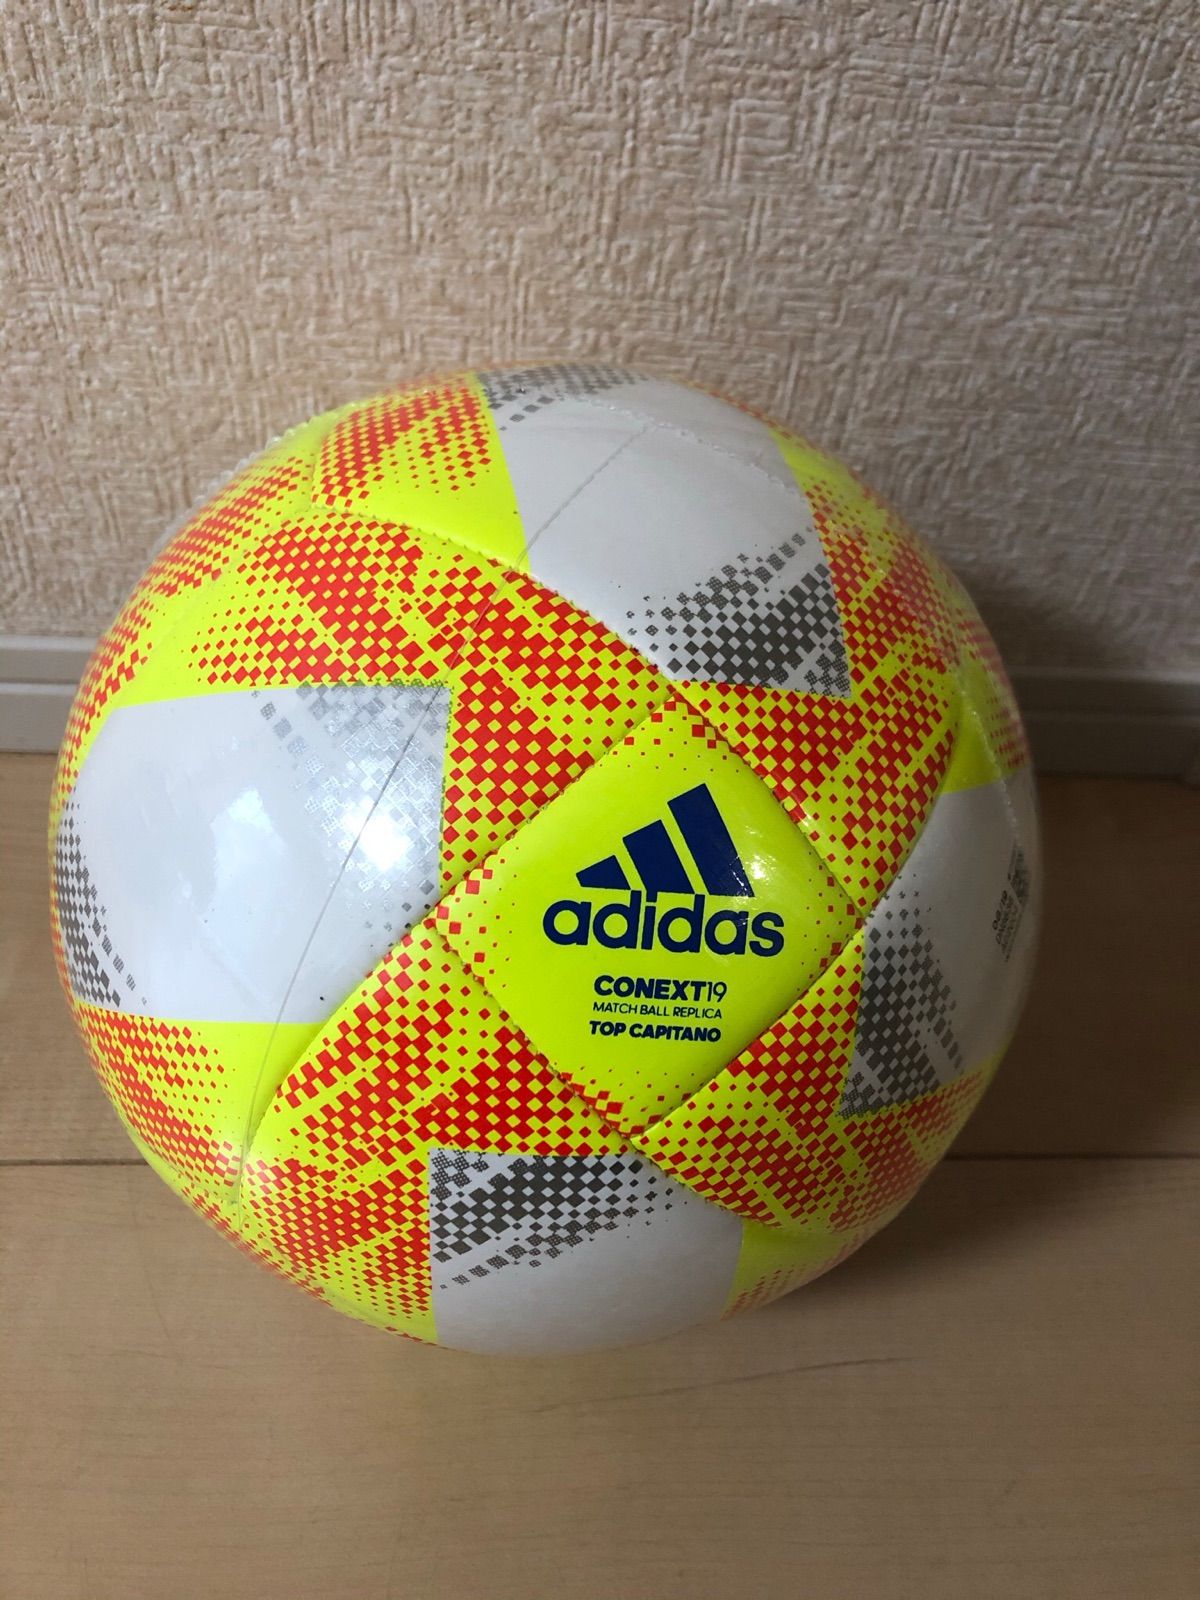 アディダス(adidas) CONEXT19(コネクト19) サッカーボール - ドン